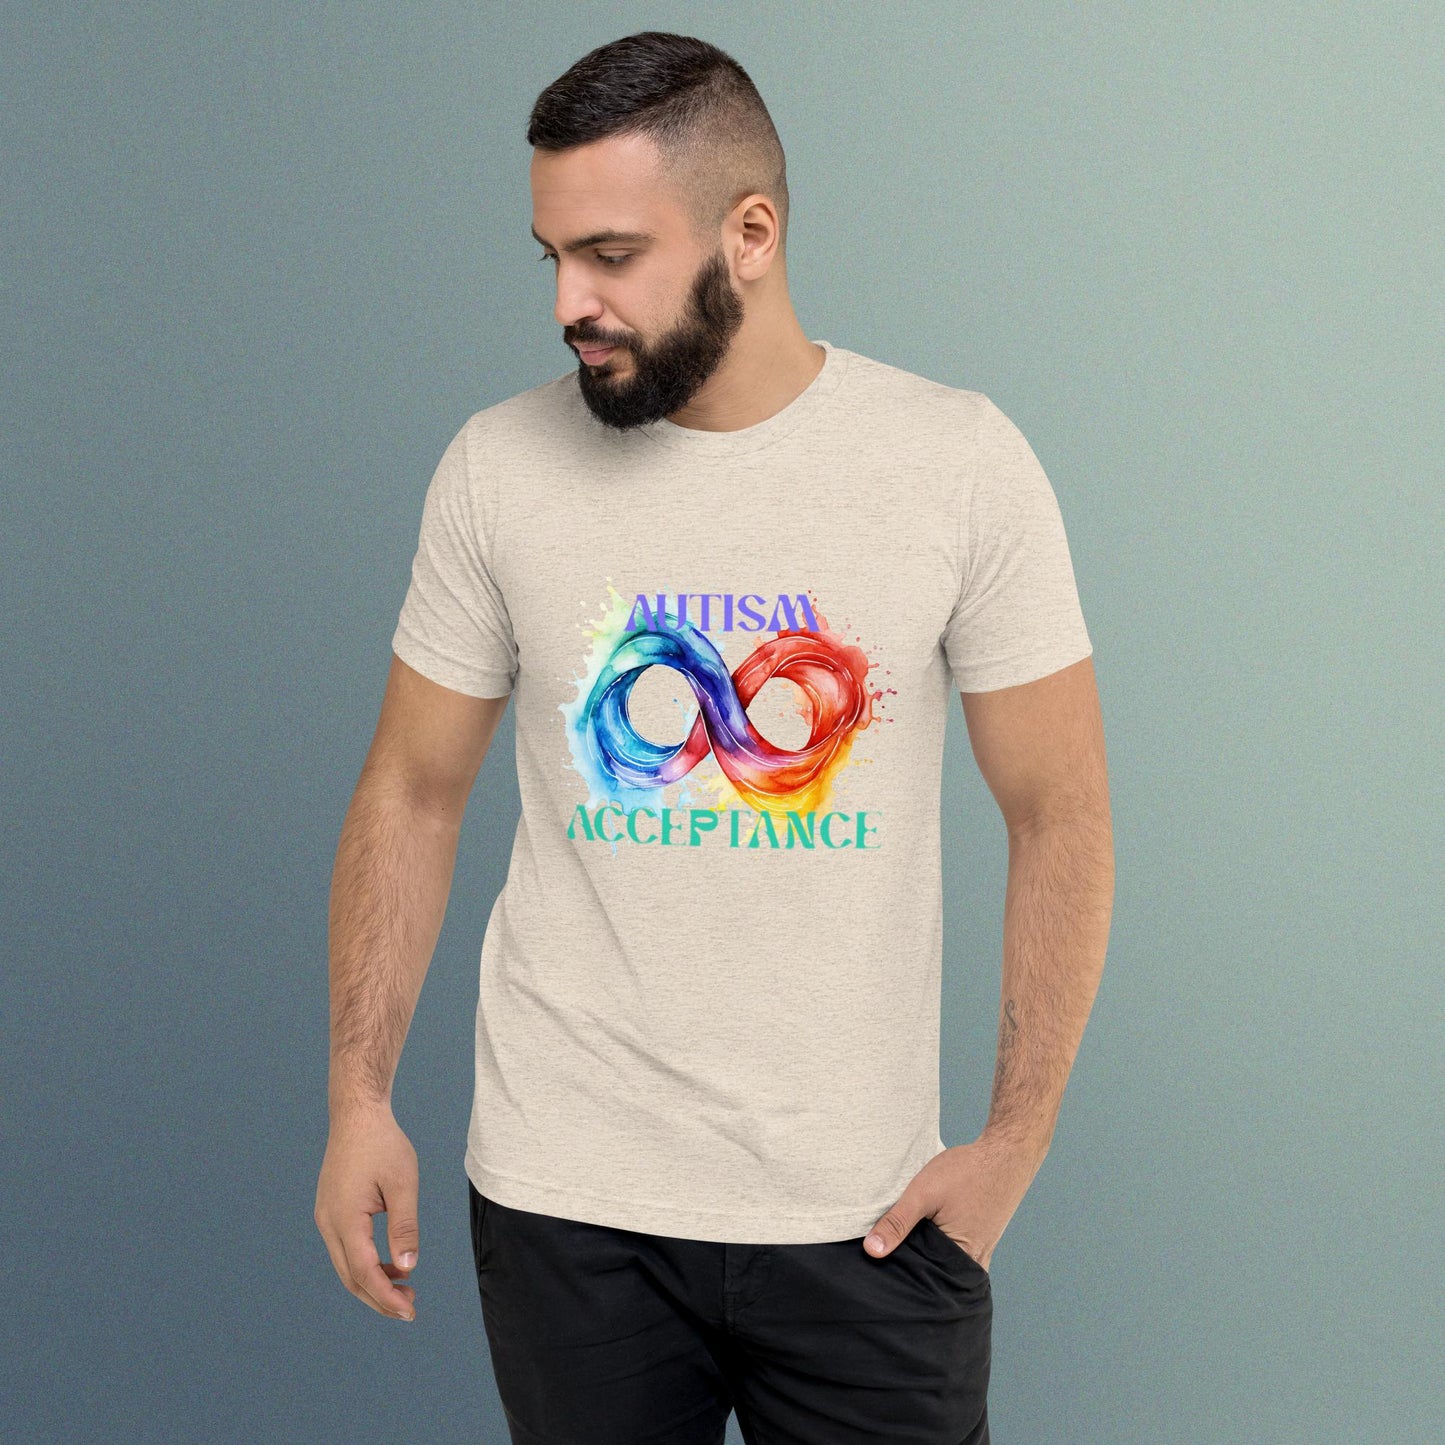 Autism Acceptance - Short sleeve t-shirt